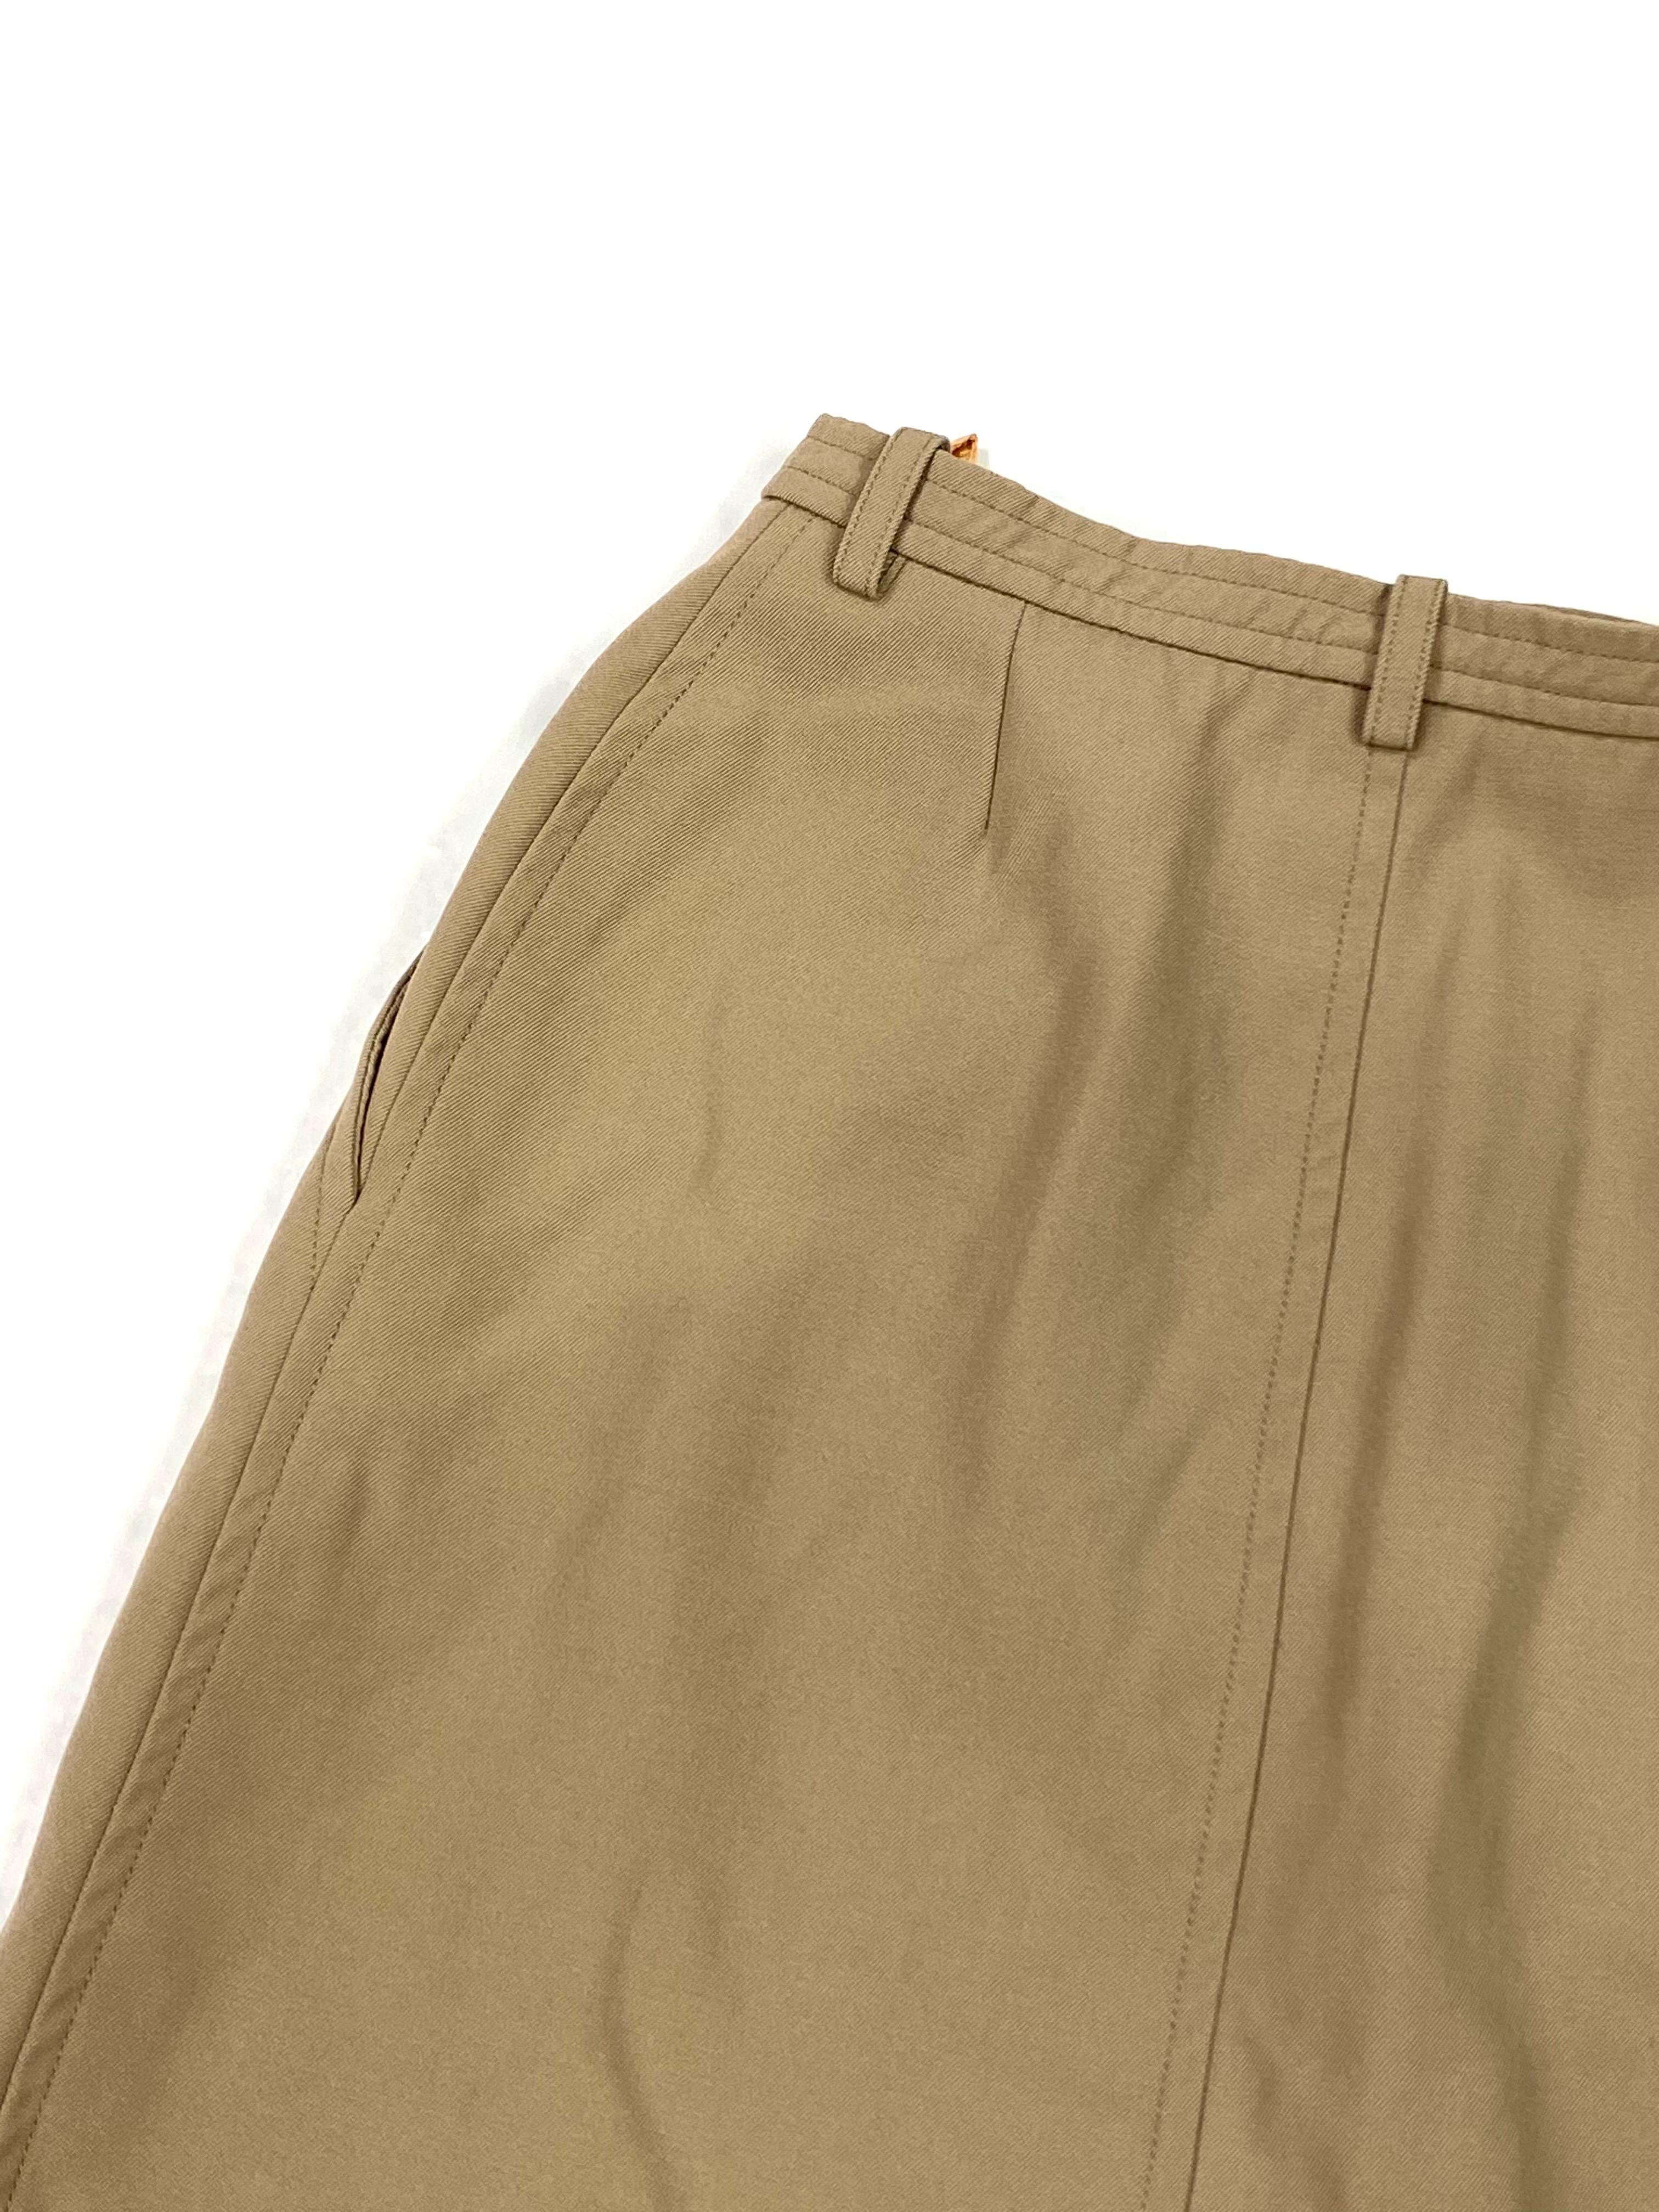 Yves Saint Laurent Rive Gauche Paris Brown Skirt, Size 36 For Sale 6